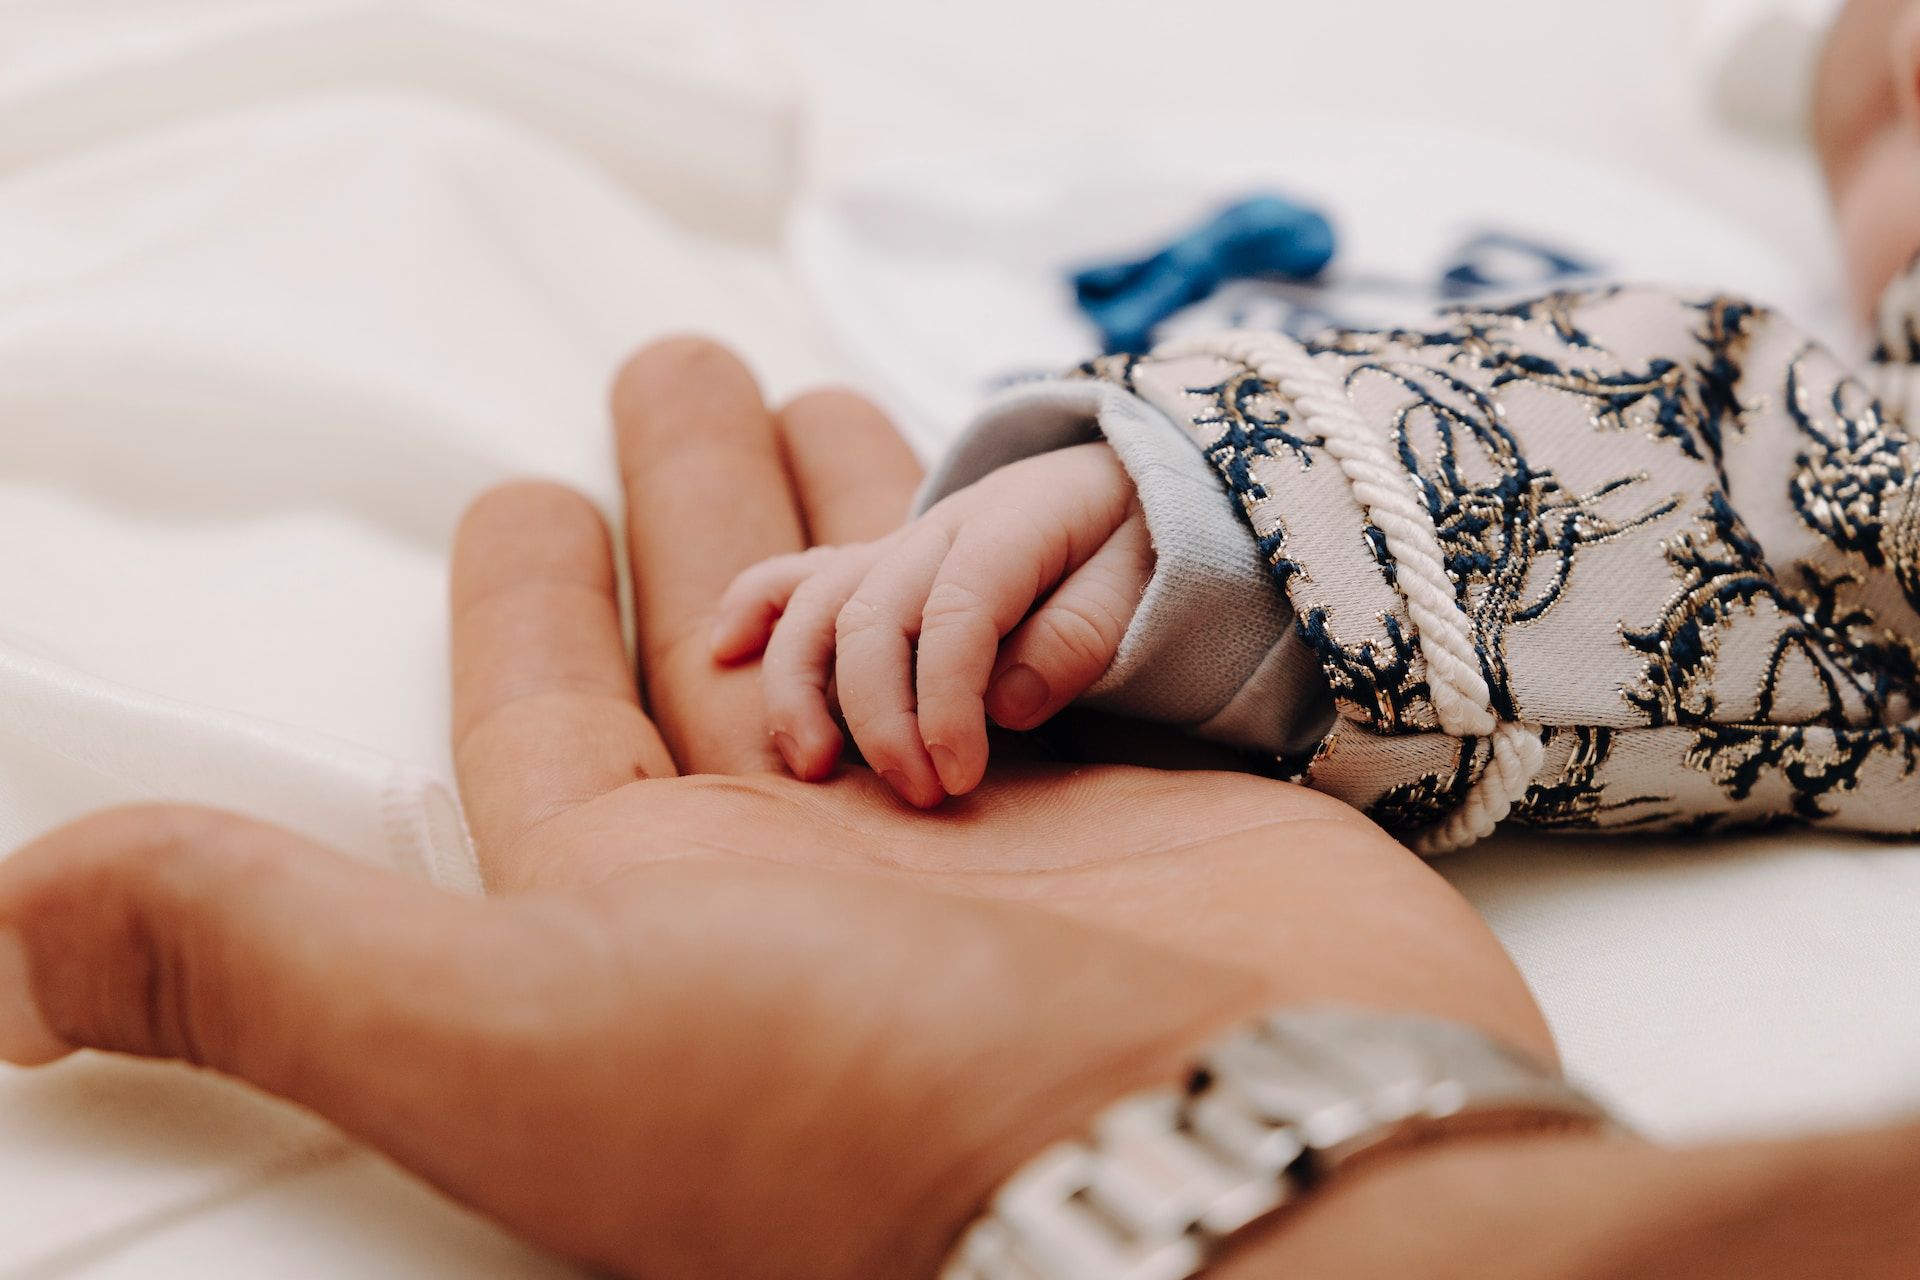 la main d'un bébé dans la main de son papa - Photo by Seif Eddin Khayat on https://unsplash.com/fr/photos/f6neg-Wl1iQ